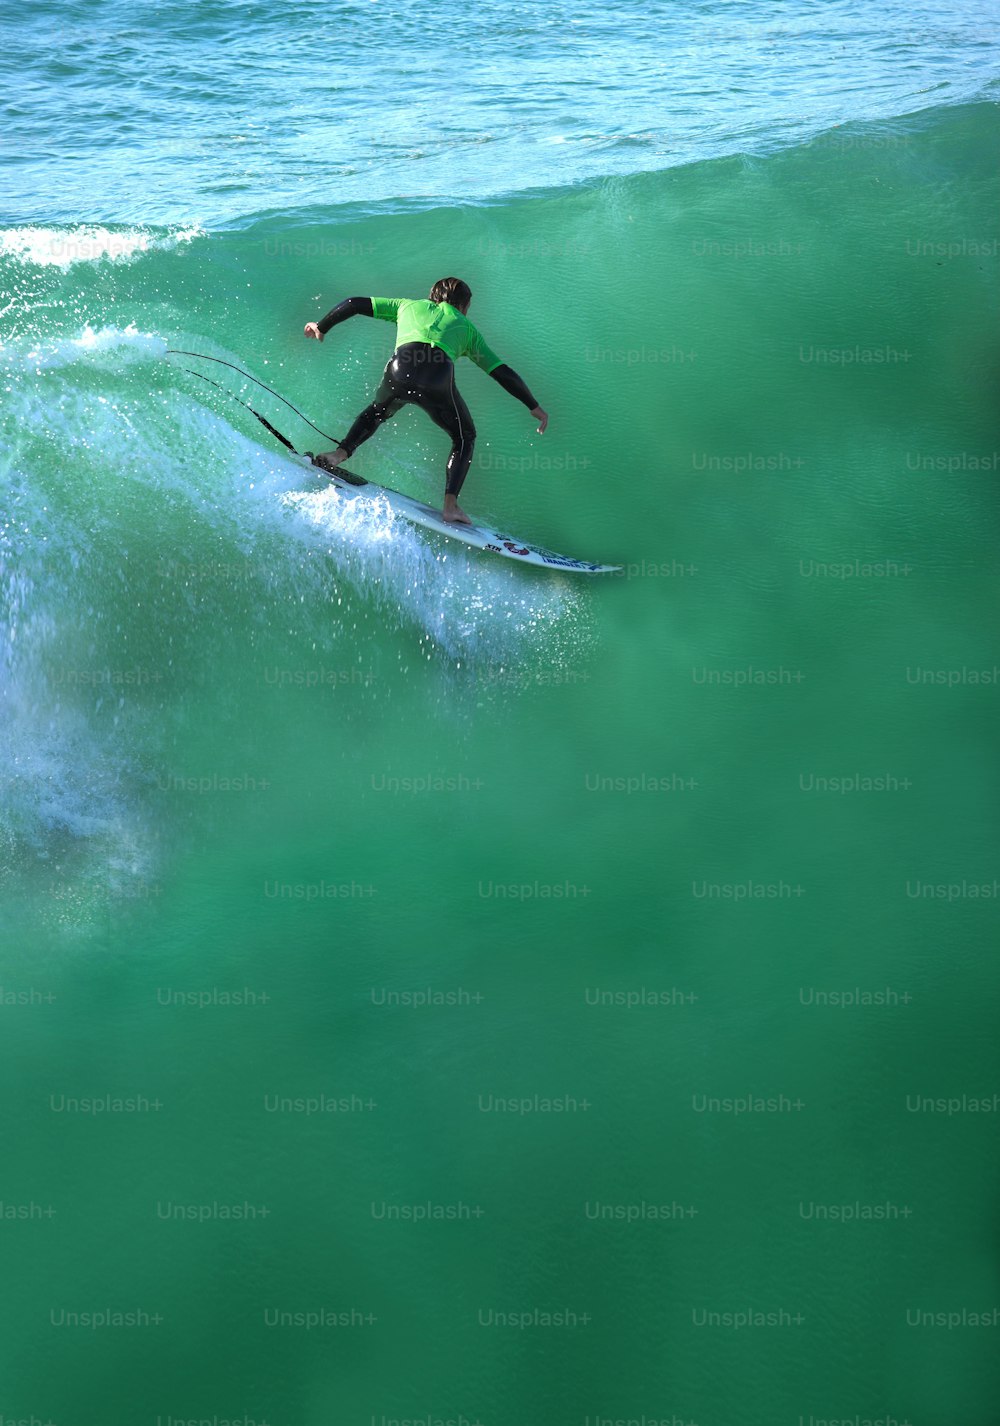 Un surfeur qui attrape une vague